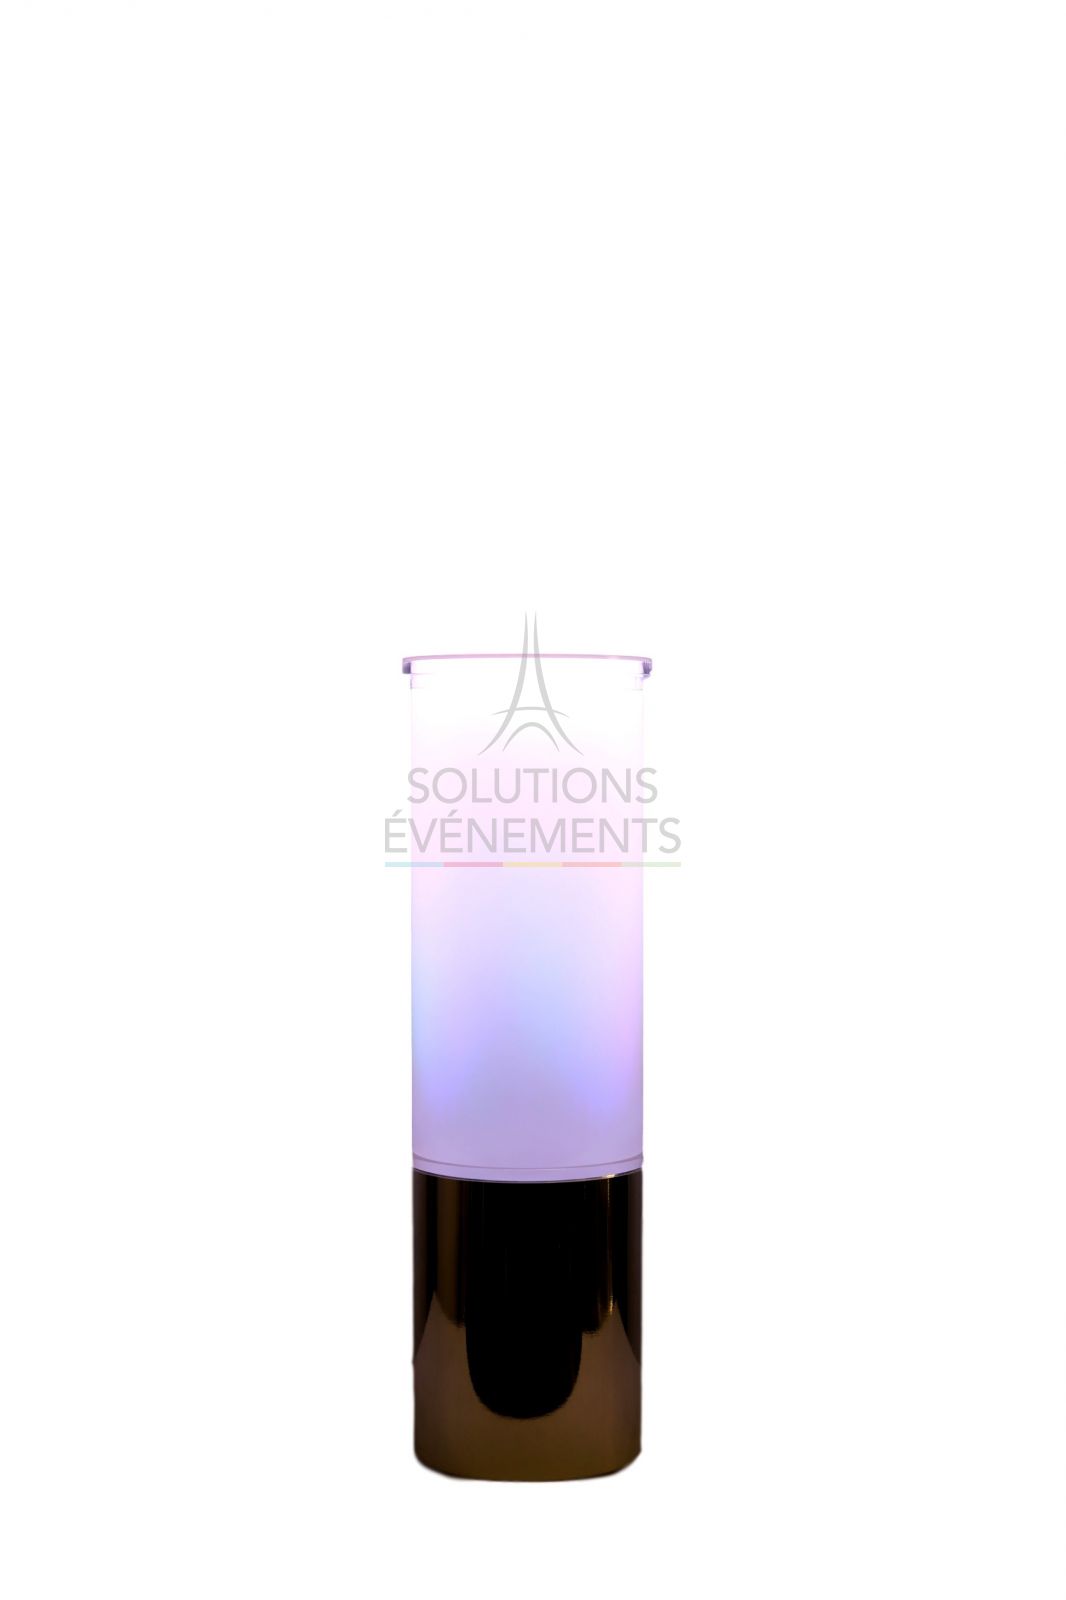 location colonne LED - tube lumineux sur batterie par 4